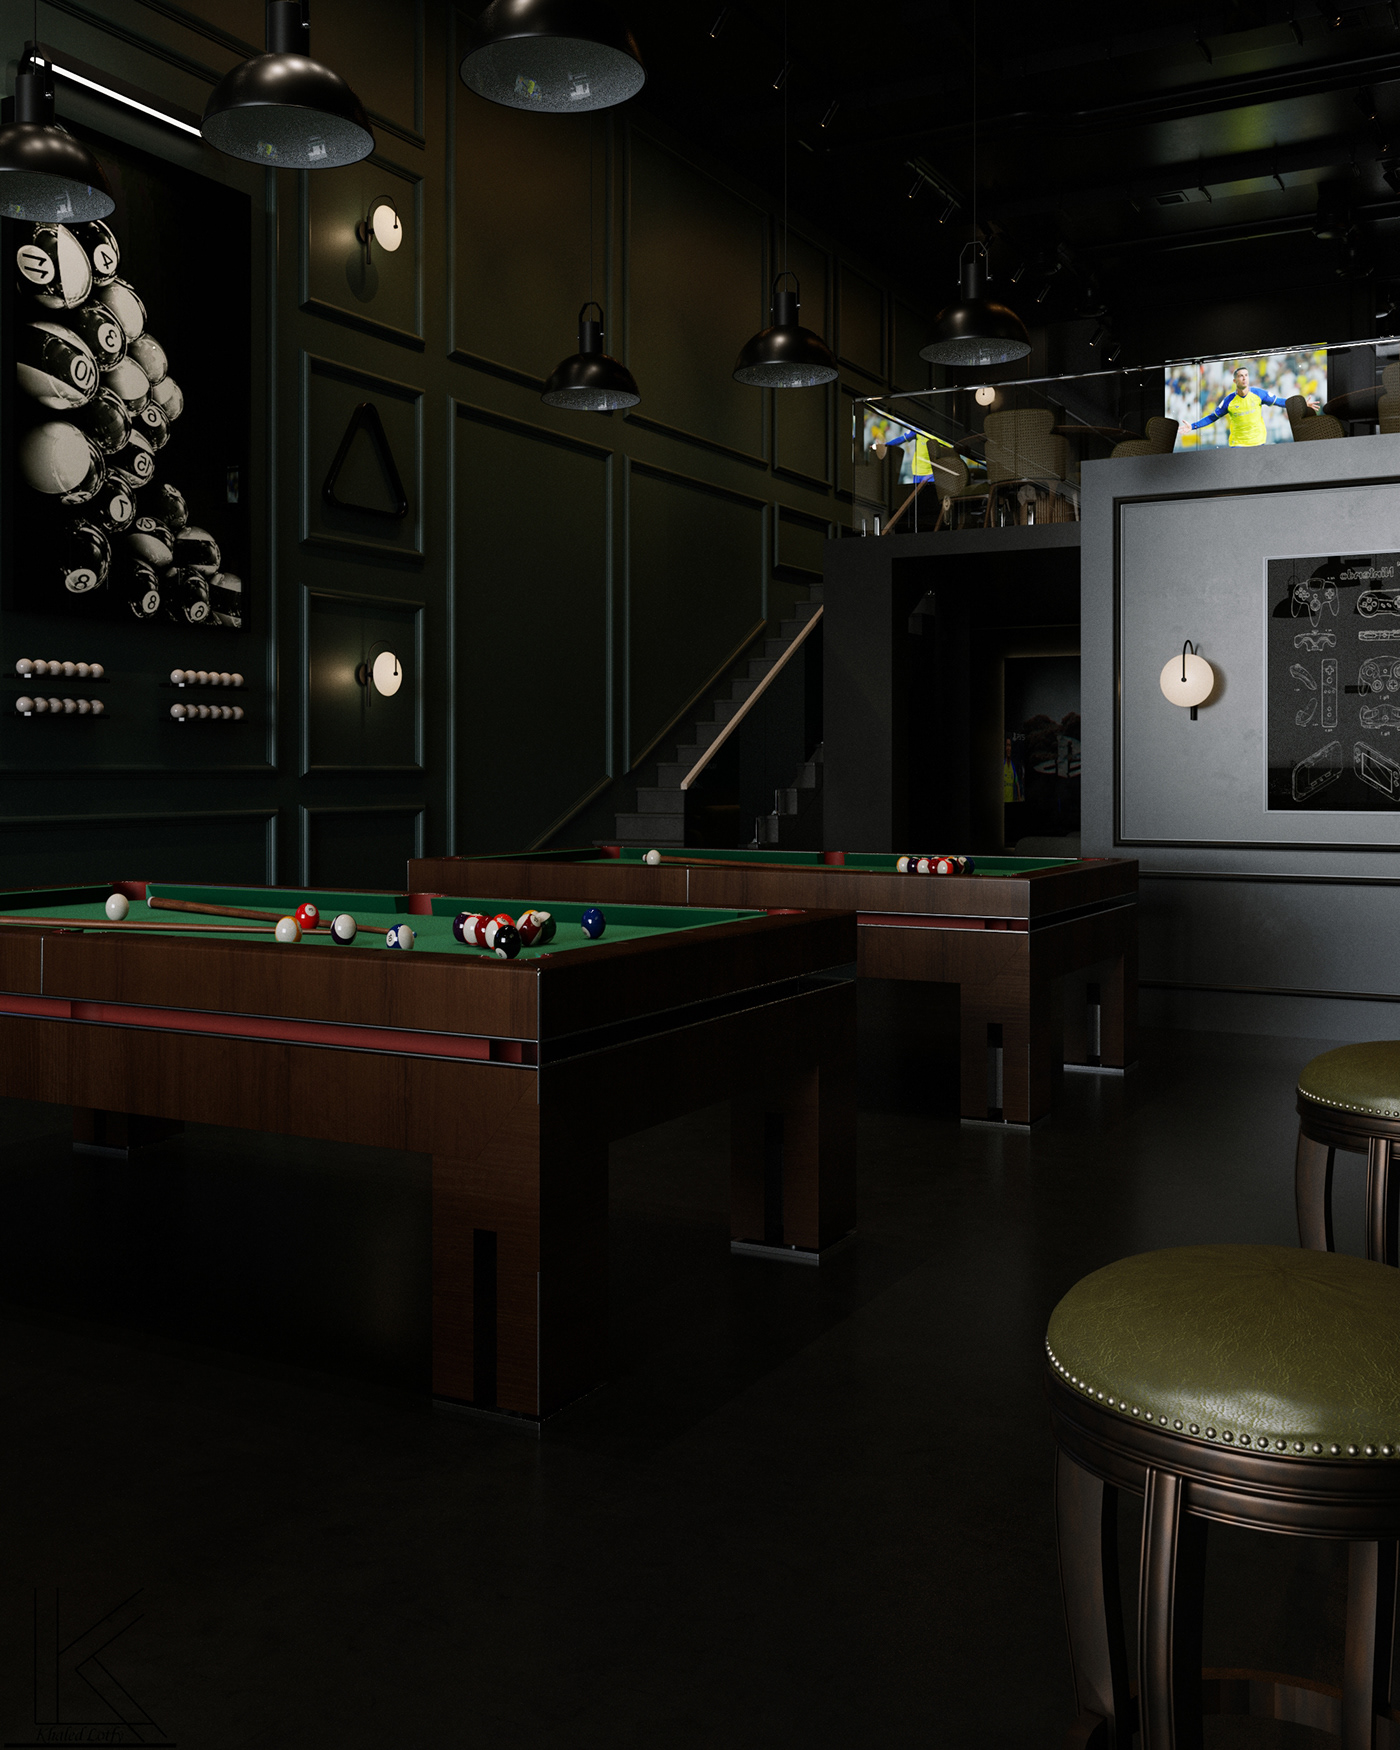 billiard table 3ds max architecture interior design  visualization NEWCLASSIC new classic corona render  archviz corona